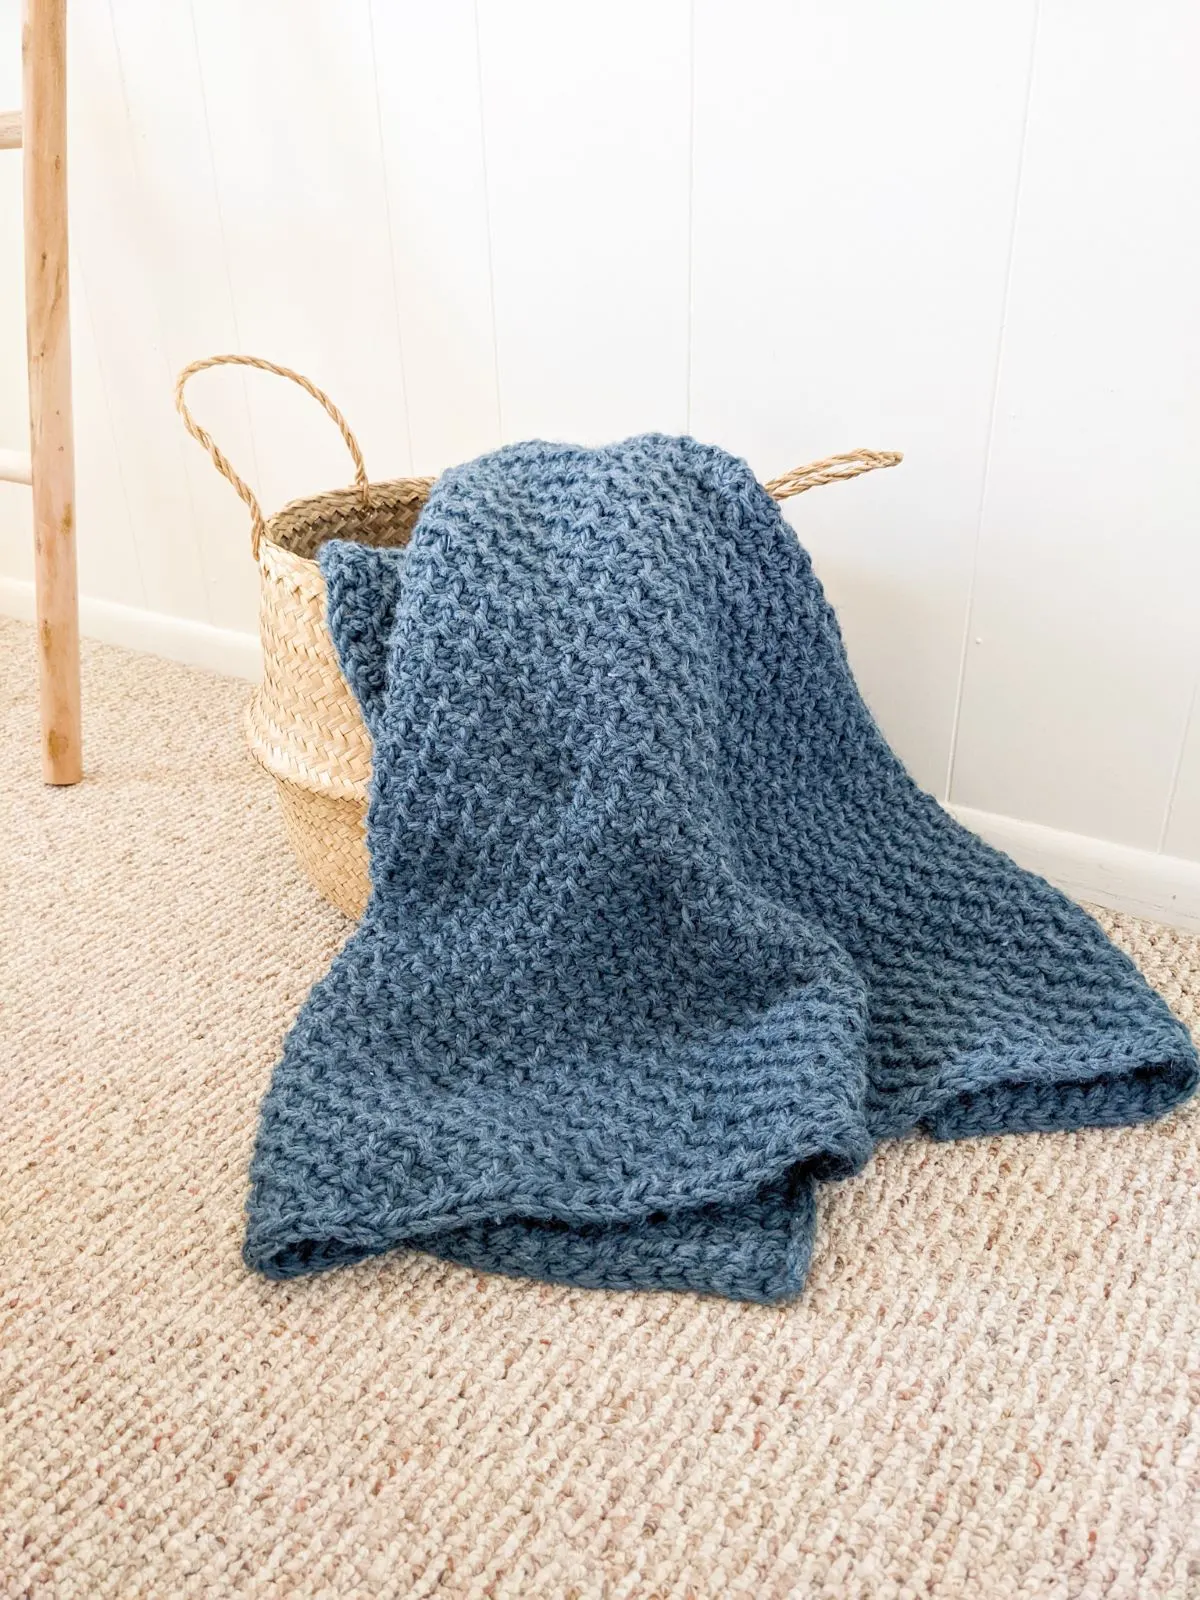 A folded blue crochet blanket in a belly basket. 